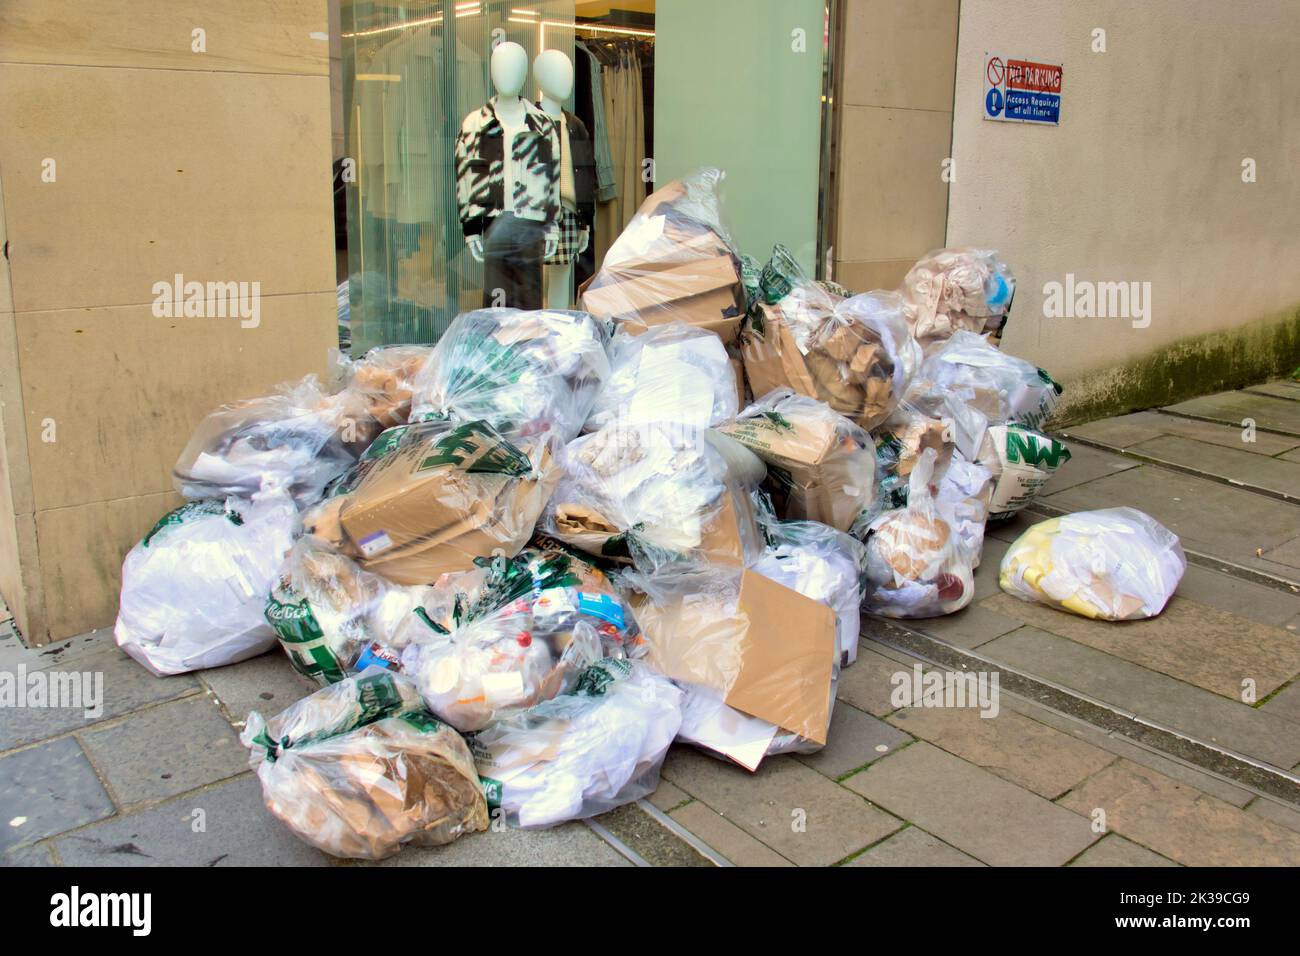 Des déchets industriels pour la collecte à l'extérieur de la fenêtre du magasin avec des mannequins sur le style Mile Buchanan Street Glasgow, Écosse, Royaume-Uni Banque D'Images